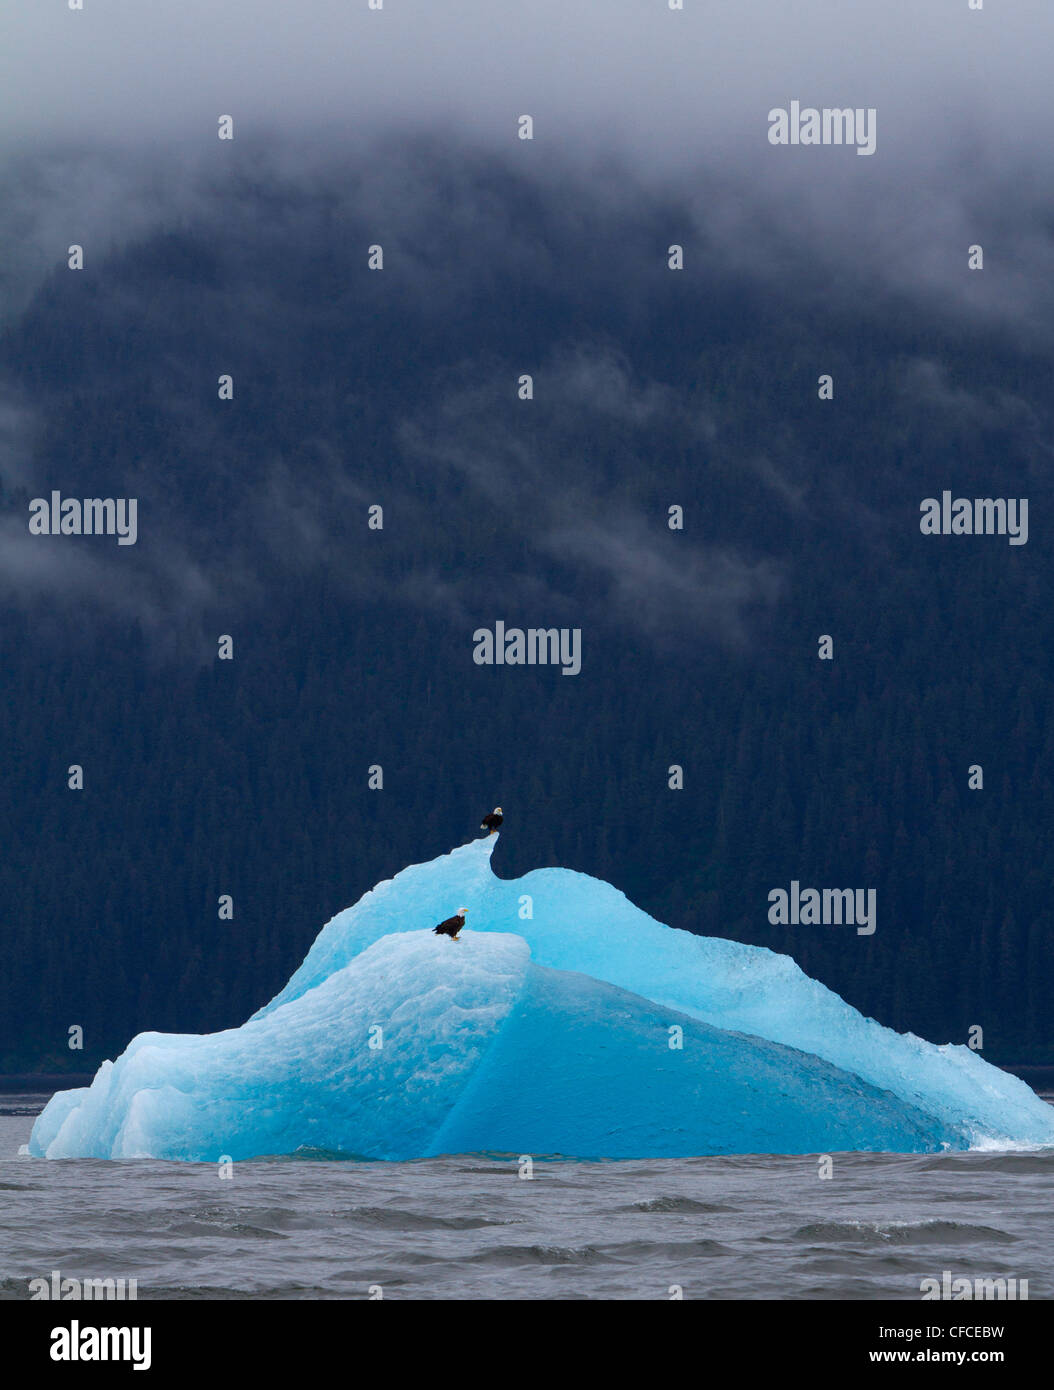 El águila volará iceberg en Alaska Foto de stock